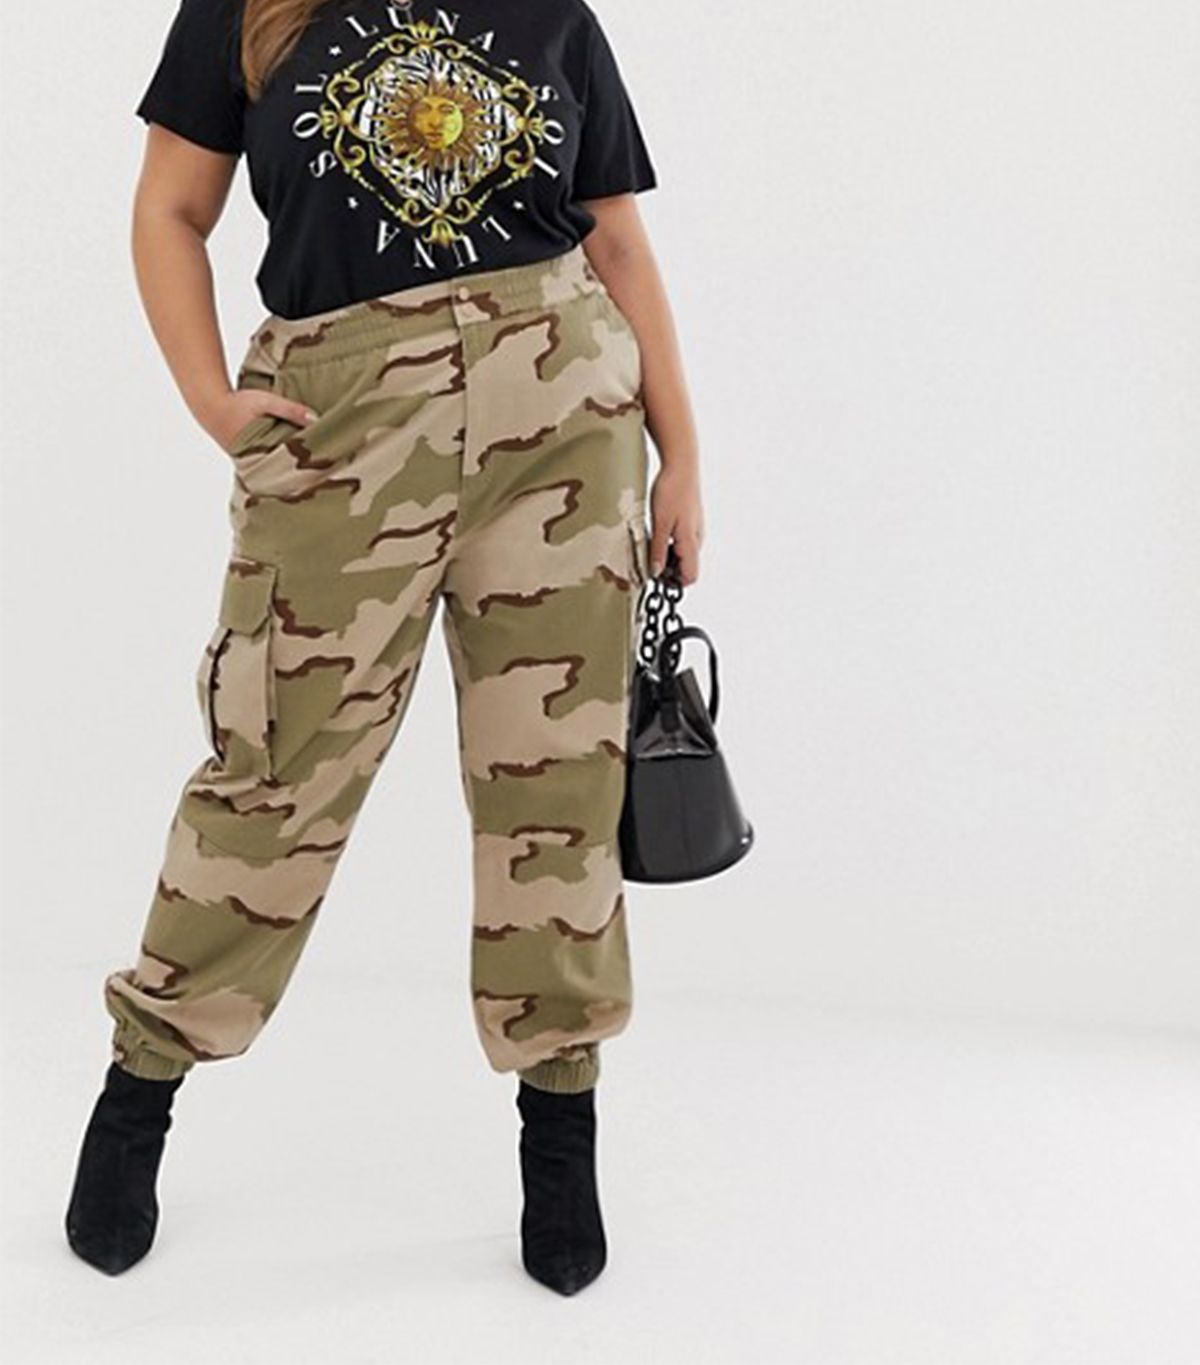 Cadet Kim Oversized Camo Pants Camo Concert Instagram  Plus Size Concert  Outfits  Concert Attire Concert Clothes Concert Outfit Fashion